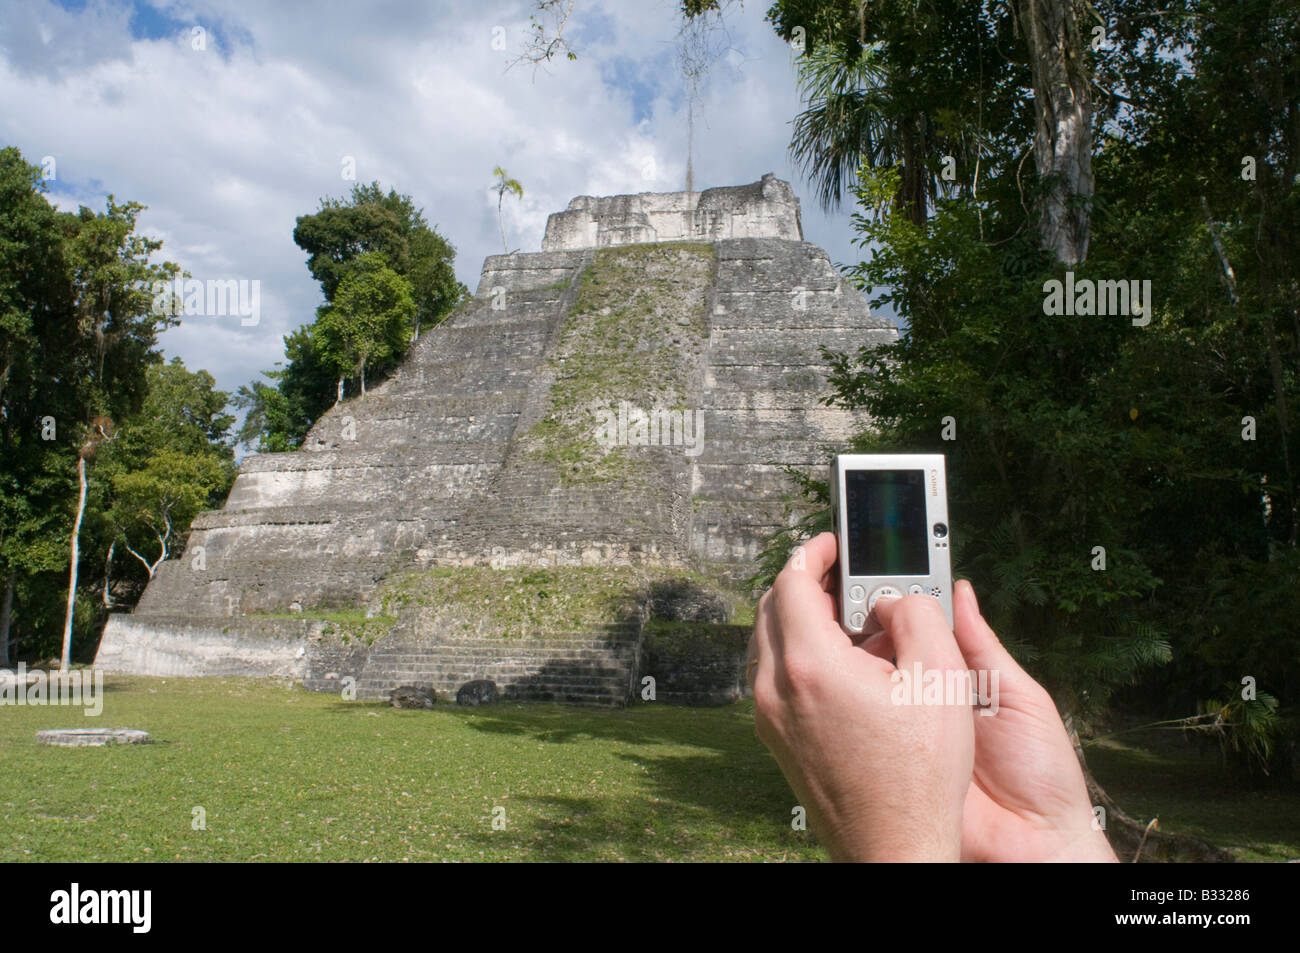 Tourist en utilisant un appareil photo numérique pour photographier un temple maya au Guatemala Tikal Yaxha nr Banque D'Images